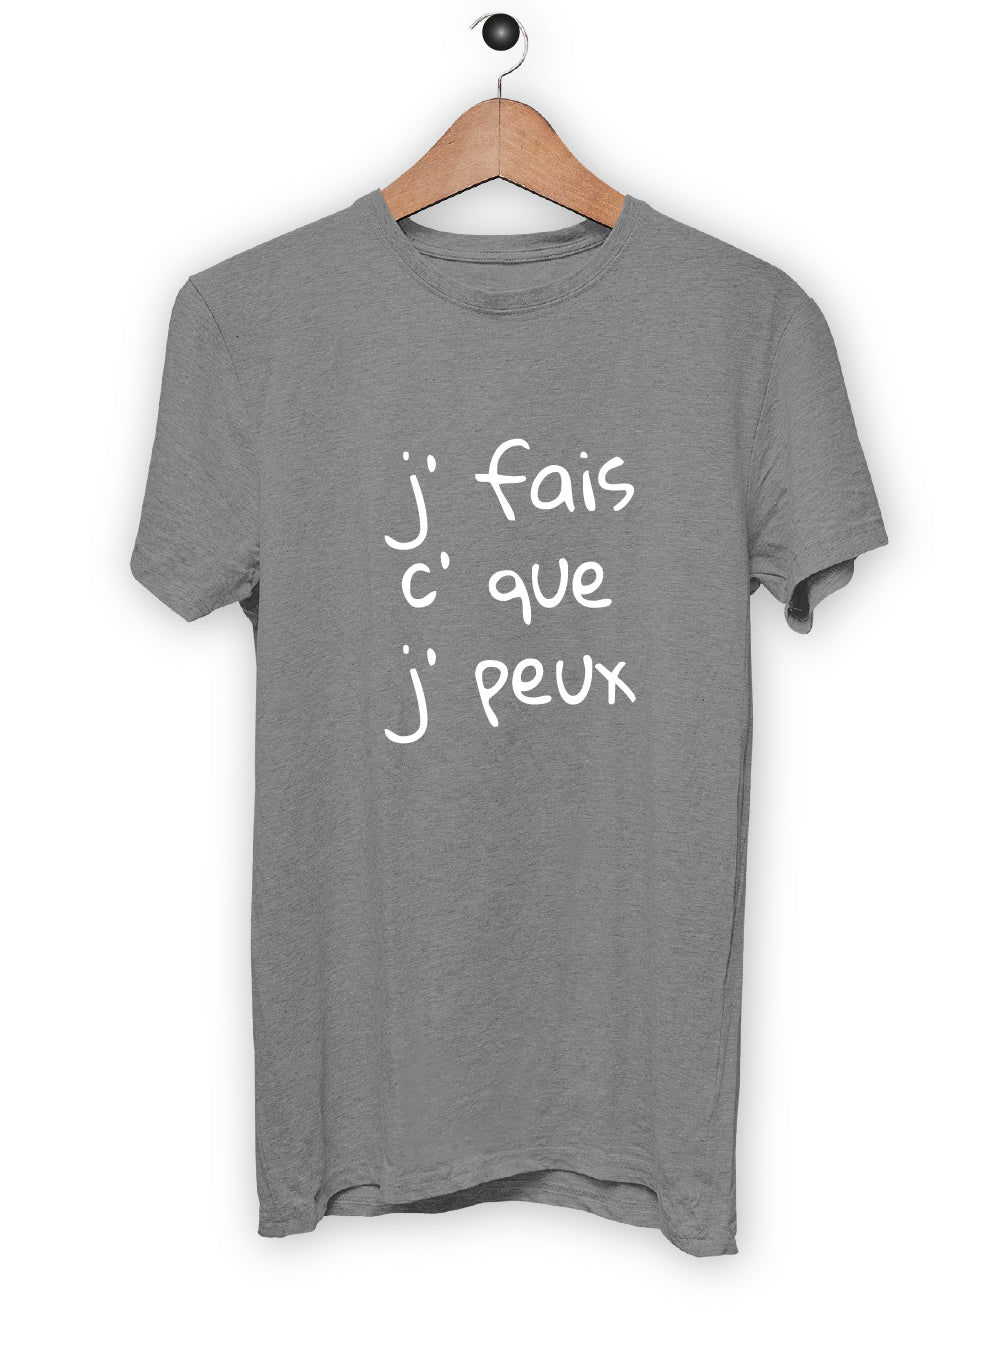 T-Shirt "J'FAIS C'QUE J'PEUX"